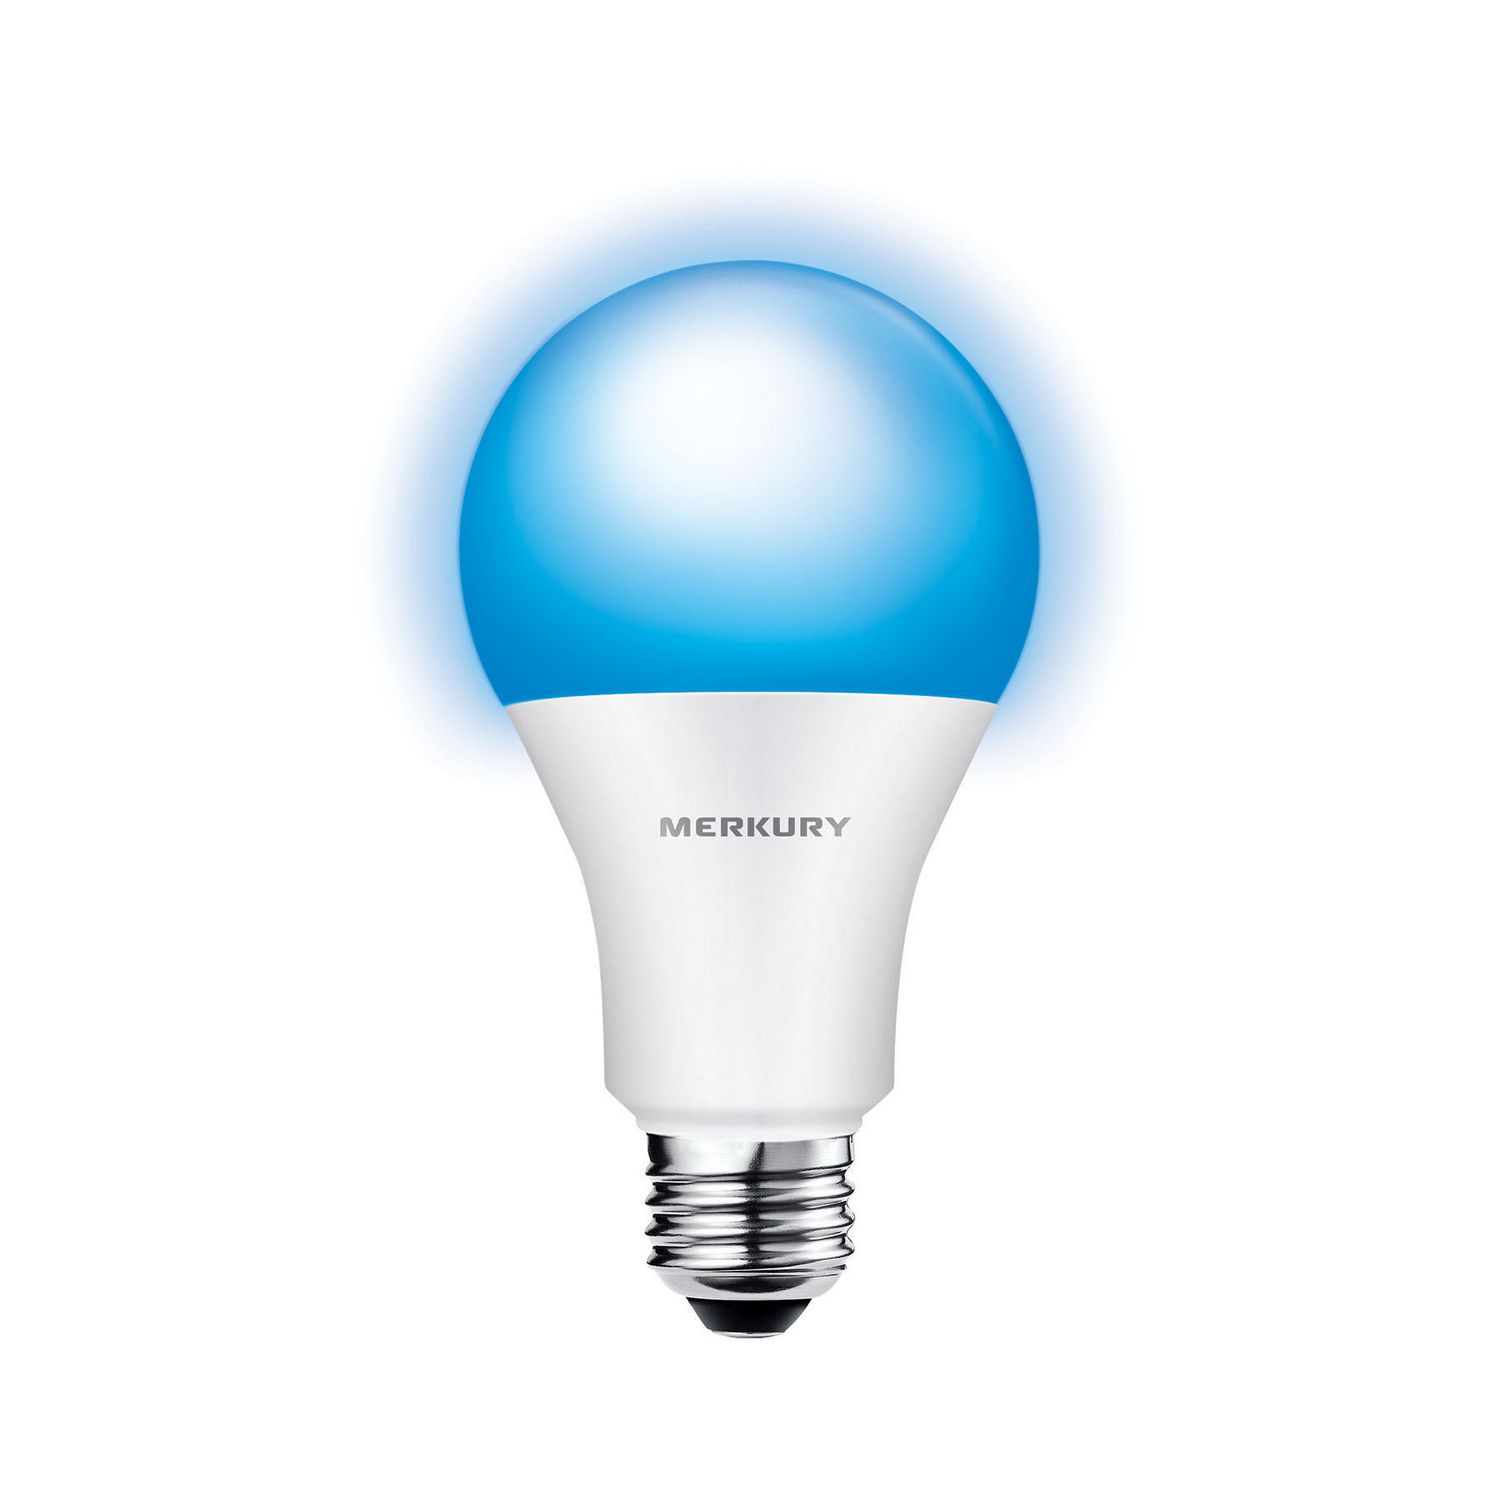 the smart bulb